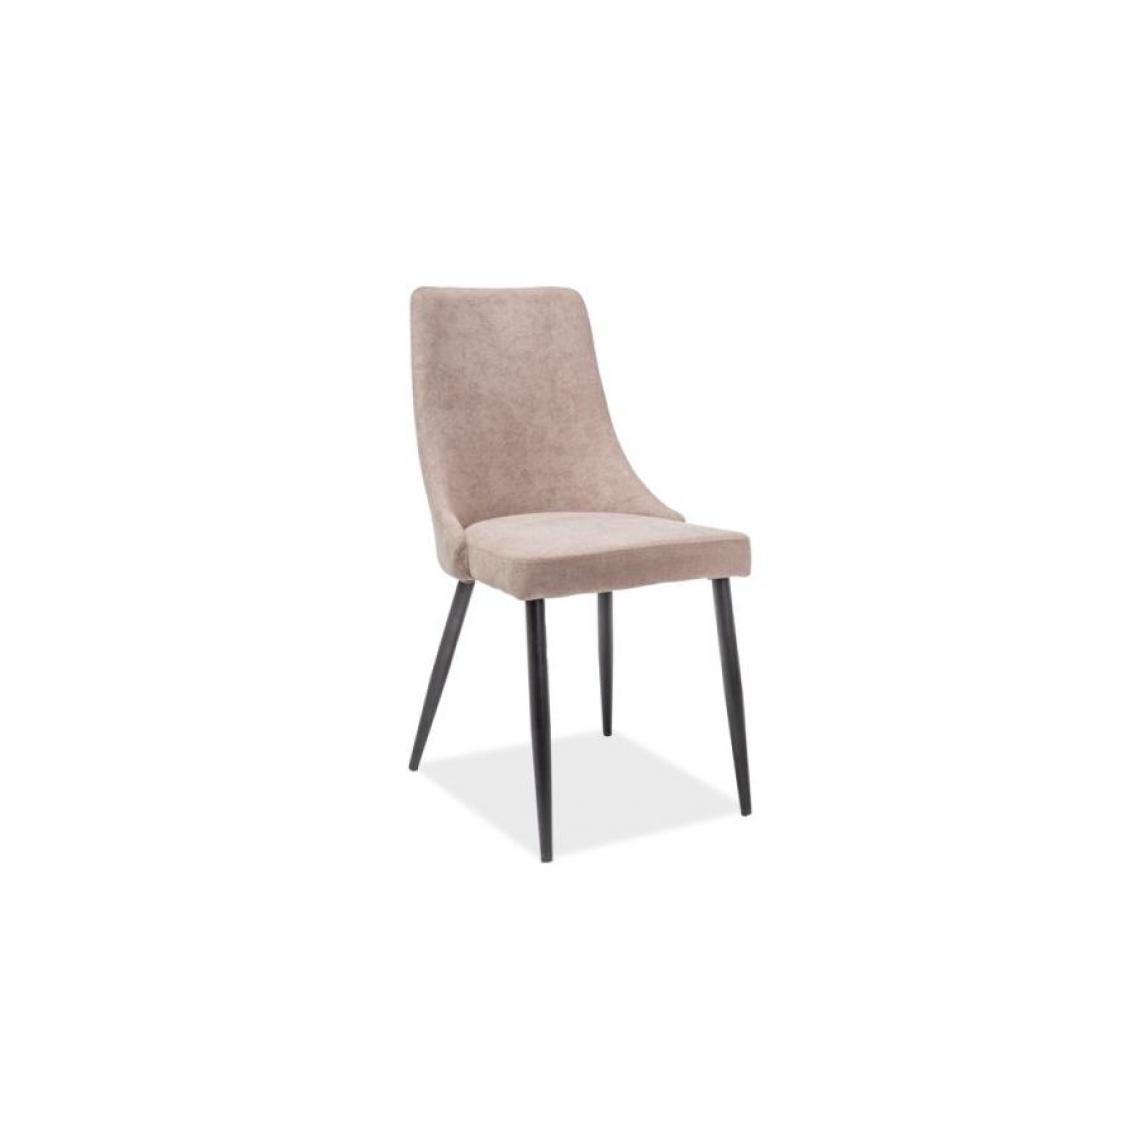 Hucoco - NOBEN - Chaise matelassée avec pieds en métal salon/salle à manger - 91x46x43 cm - Rembourrée en tissu - Base robuste - Beige/Chêne - Chaises